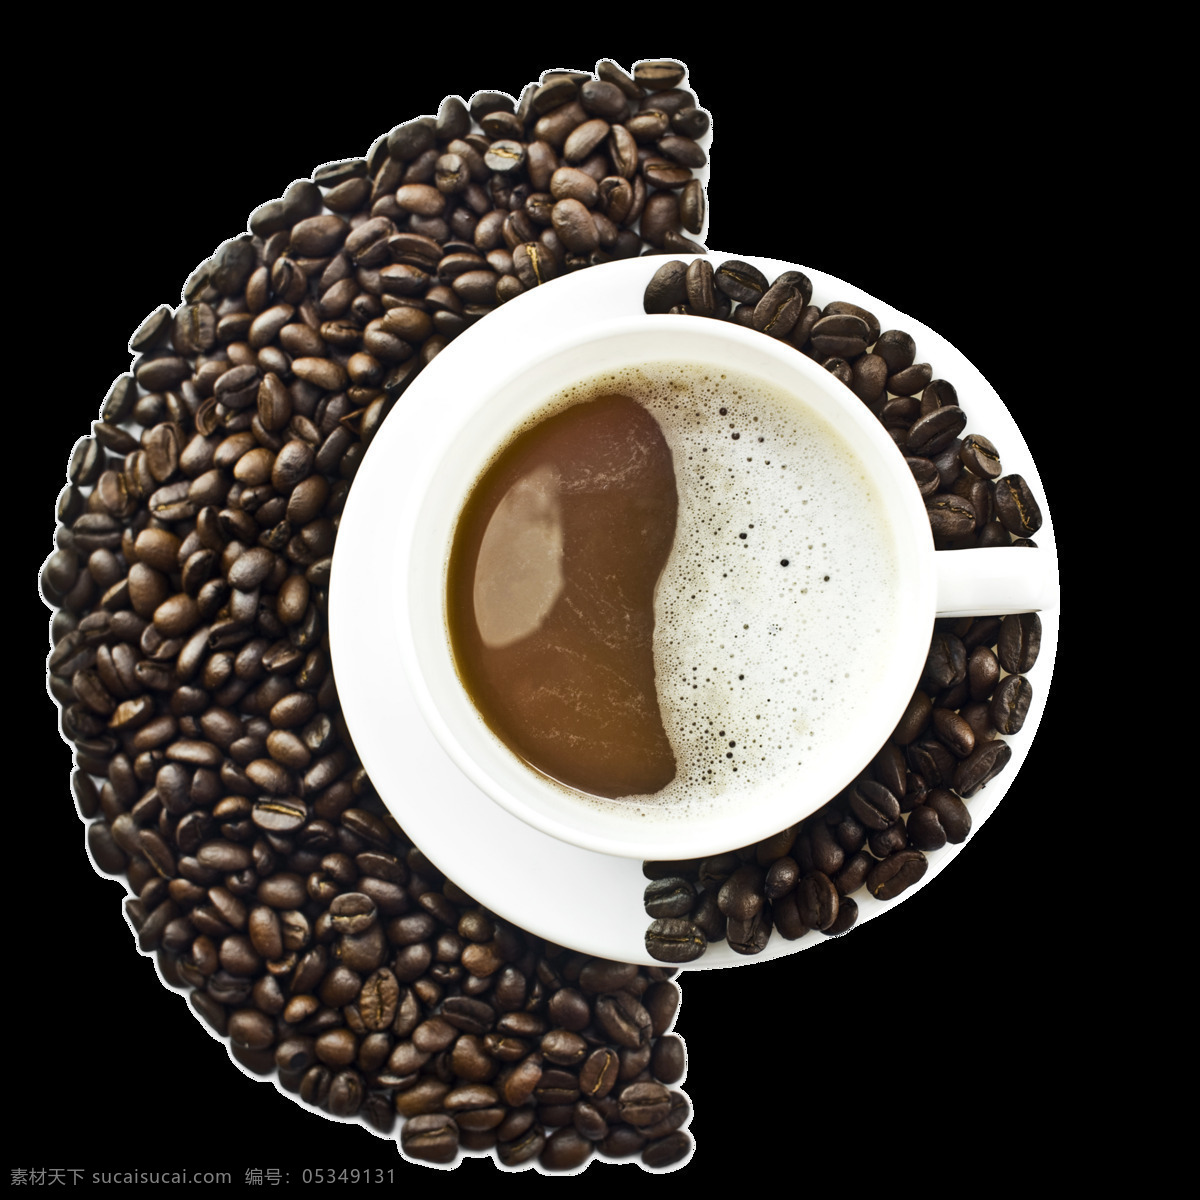 咖啡 蓝山咖啡豆 云南咖啡豆 进口咖啡豆 小粒咖啡豆 意大利浓咖啡 咖啡粉 风味咖啡豆 咖啡豆棚拍 黑咖啡 烘焙咖啡豆 背景素材 元素